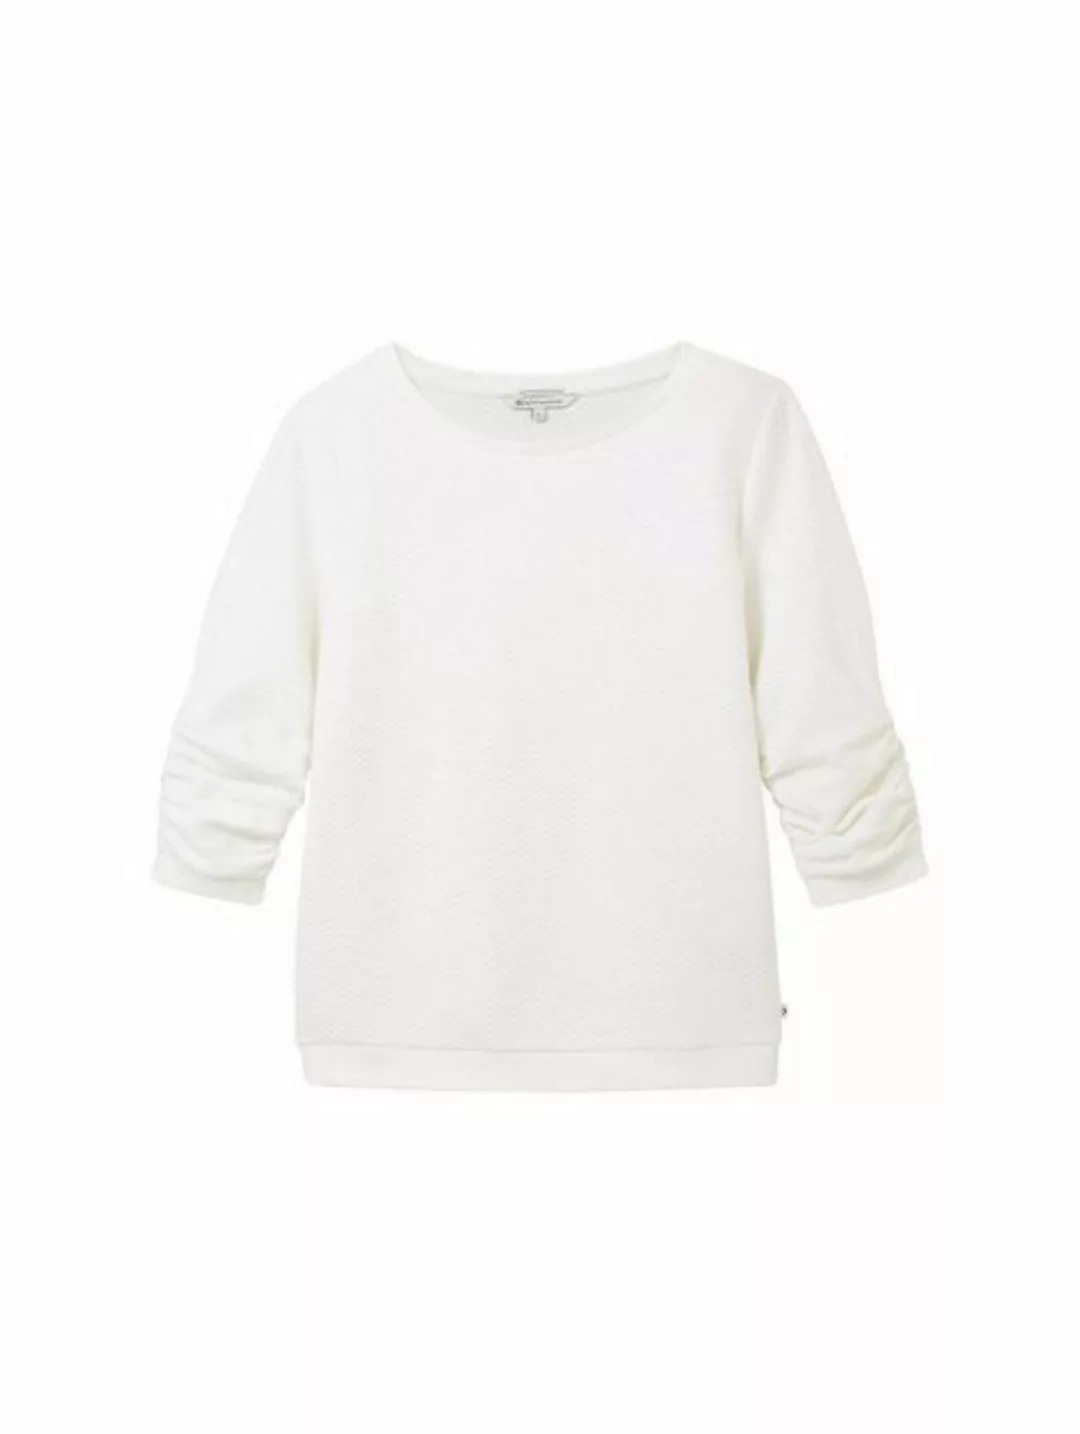 TOM TAILOR Denim T-Shirt structured sweat, off white günstig online kaufen